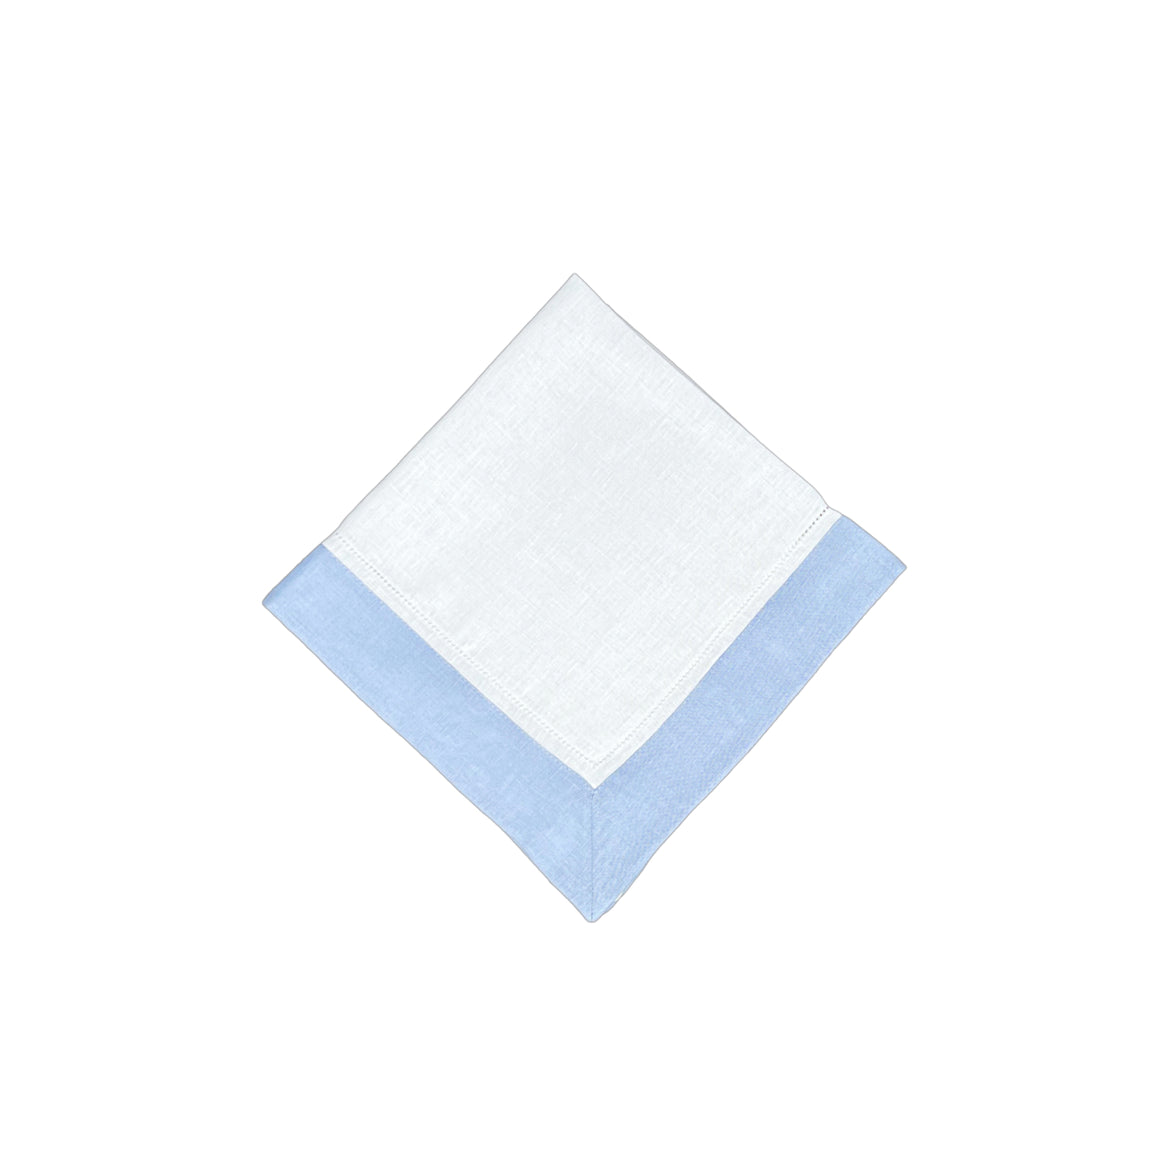 White Linen Napkin With Light Blue Linen Border, Set of 4